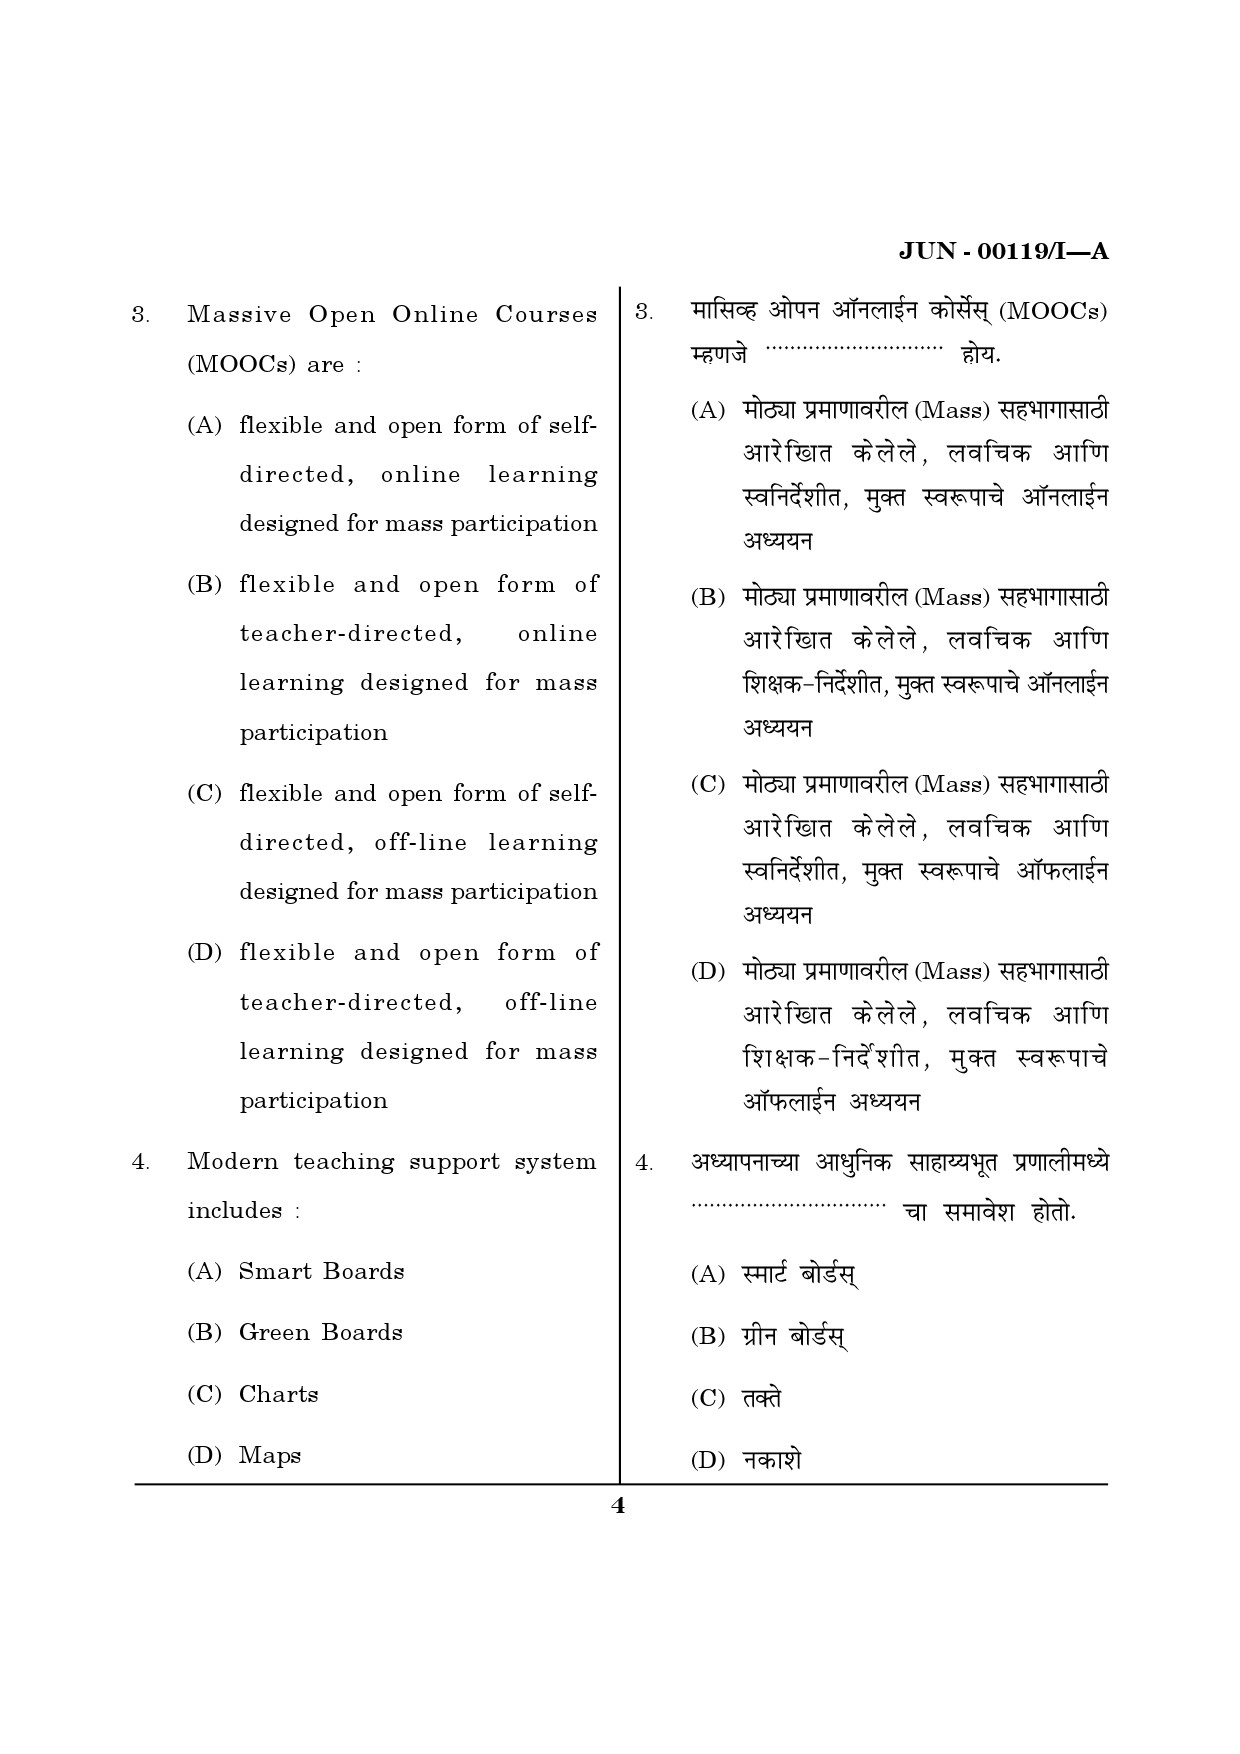 Maharashtra SET Question Paper I June 2019 3